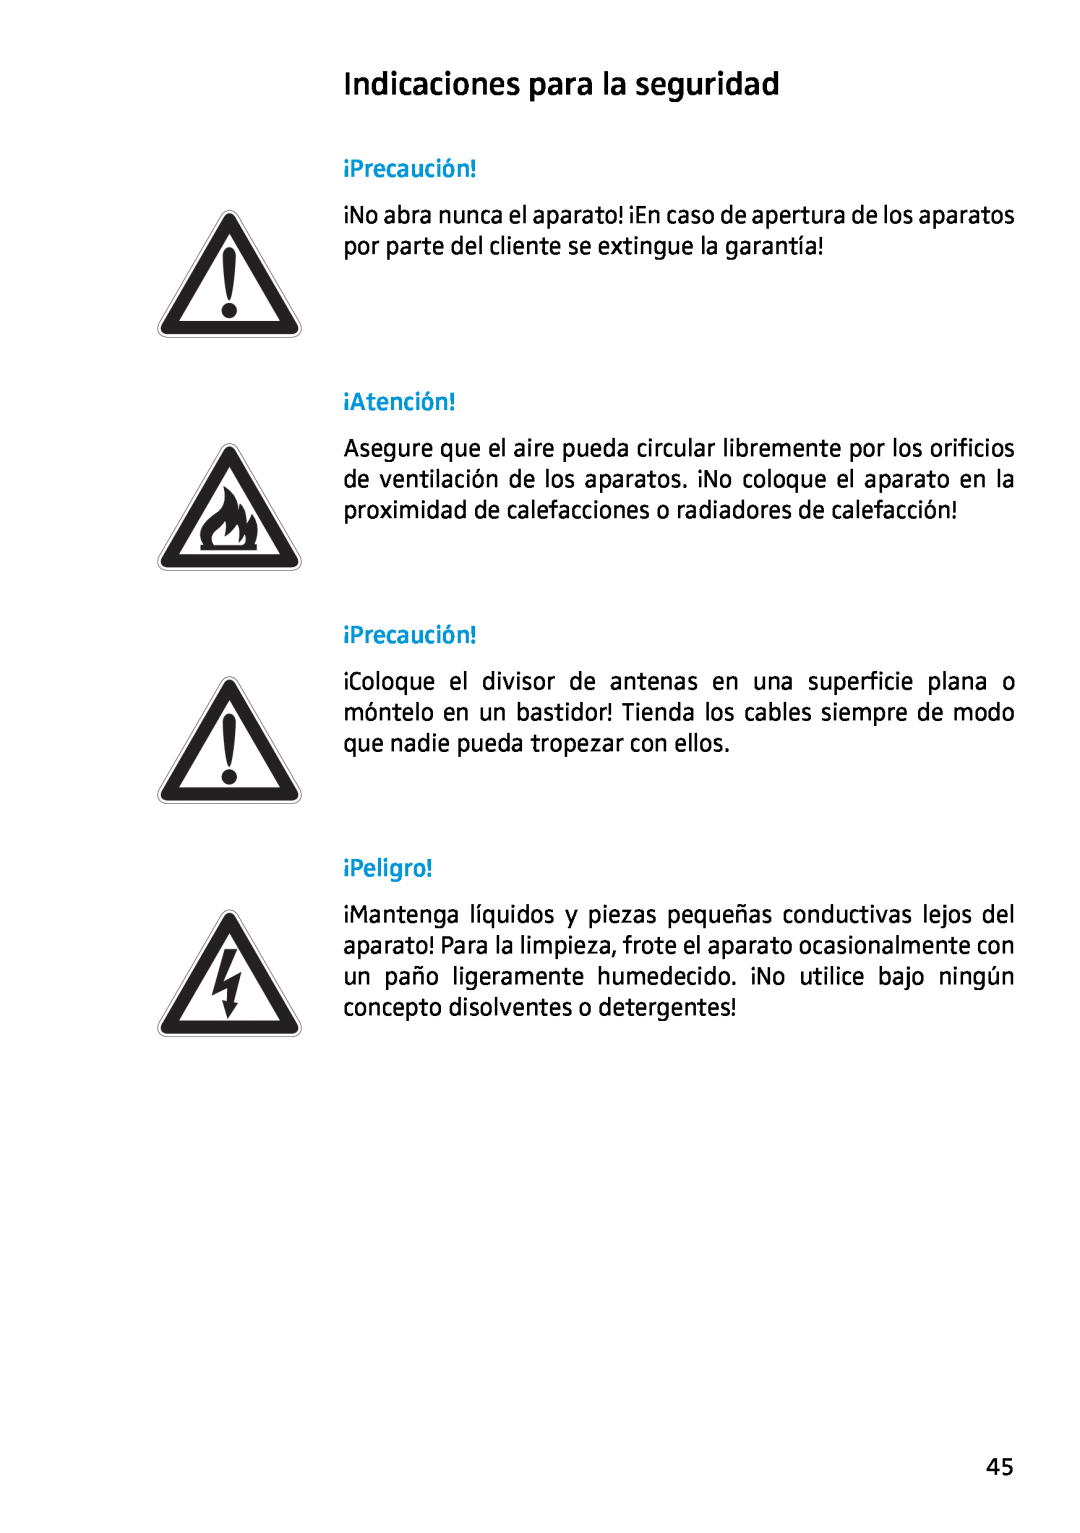 Sennheiser ASP 2 manual Indicaciones para la seguridad, ¡Precaución, ¡Atención, ¡Peligro 